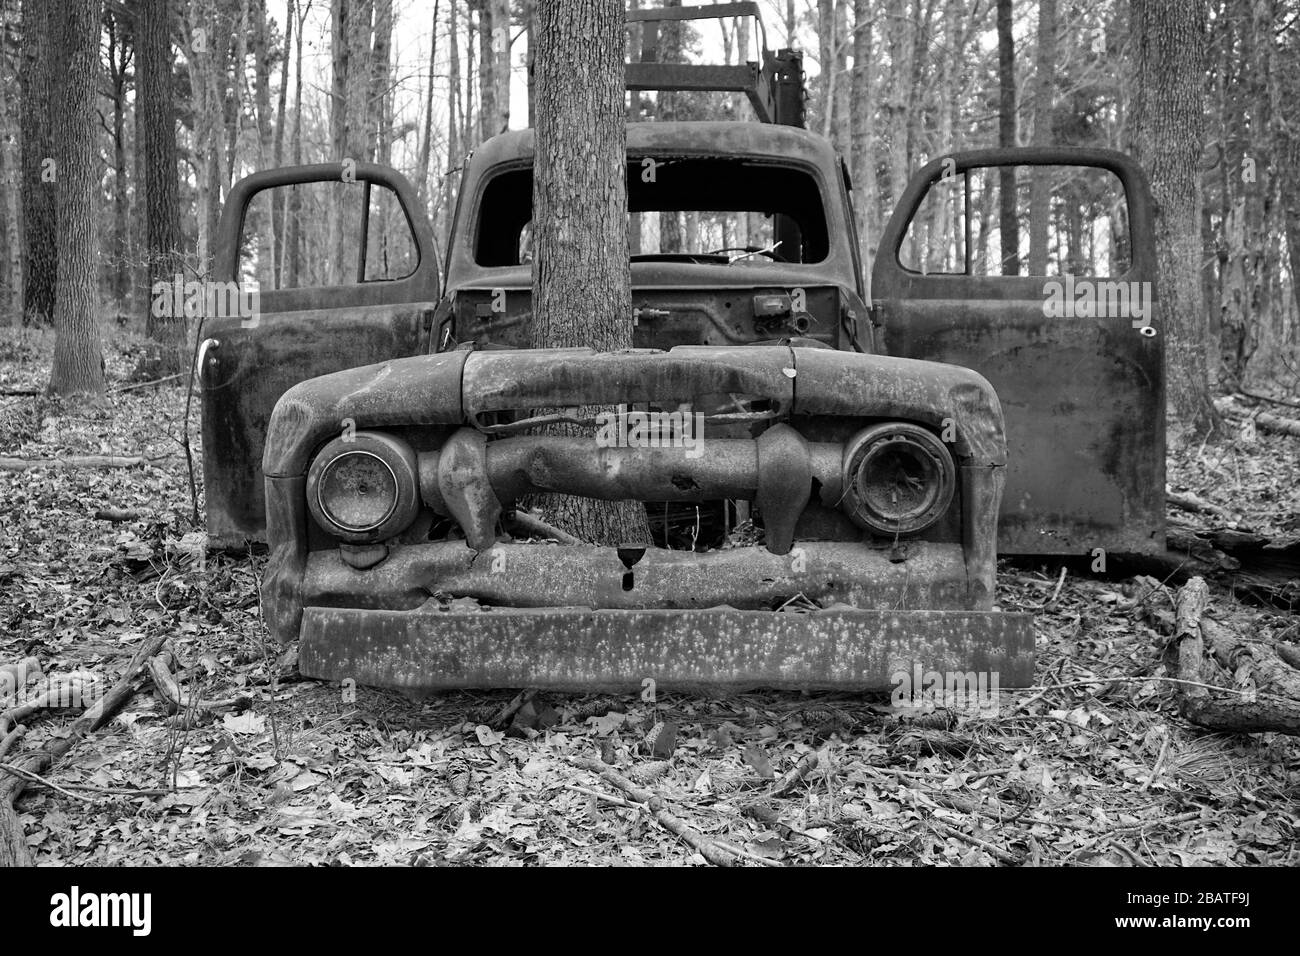 Camión viejo y oxidado abandonado con un árbol que crece a través del compartimiento del motor Foto de stock